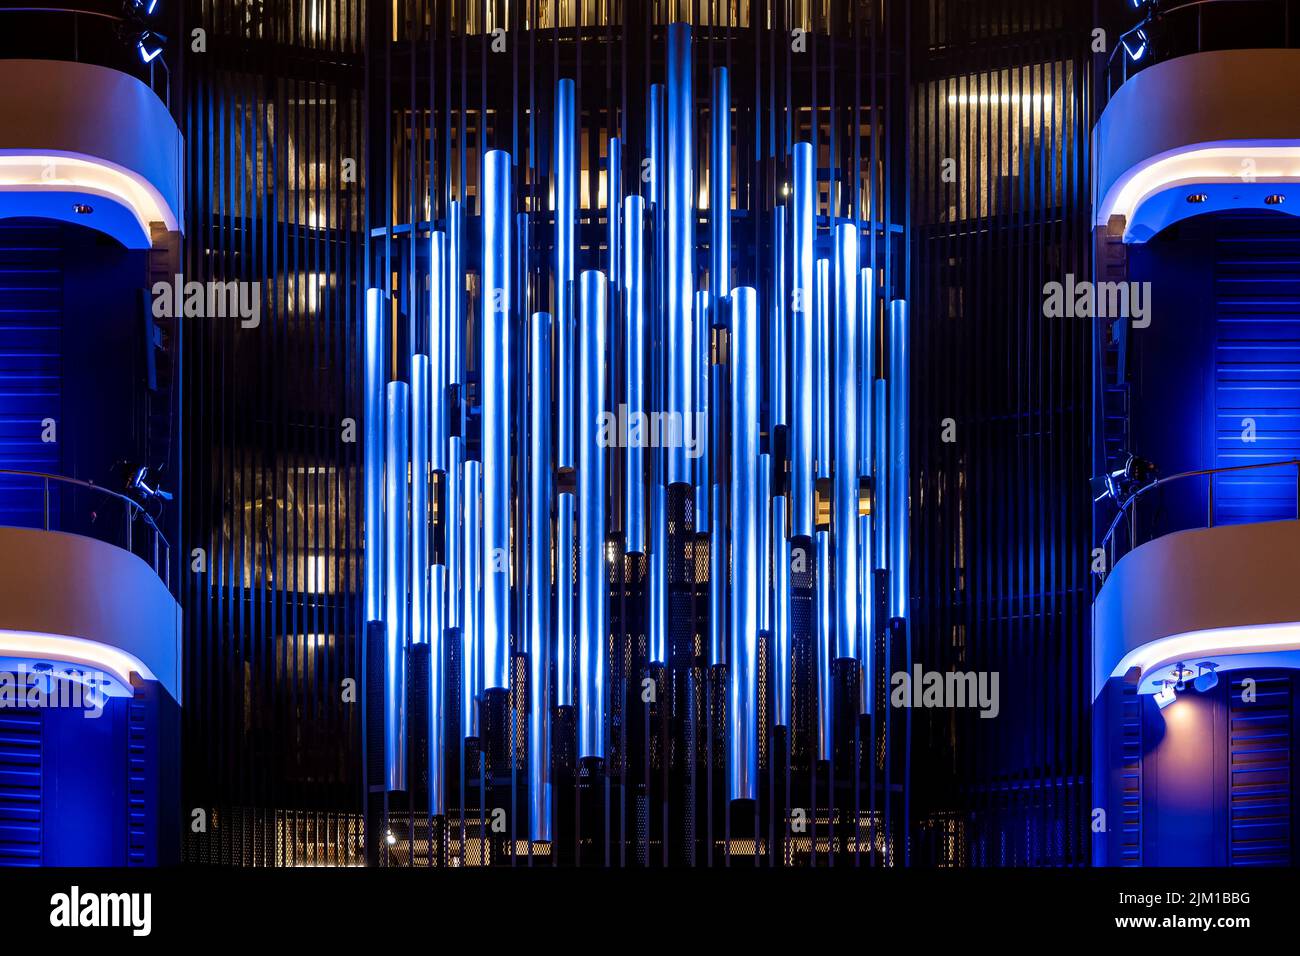 Pfeifenorgel in der Orgelhalle einer Philharmonie. Stahlrohre der Pfeifenorgel in der modernen philharmonie Stockfoto